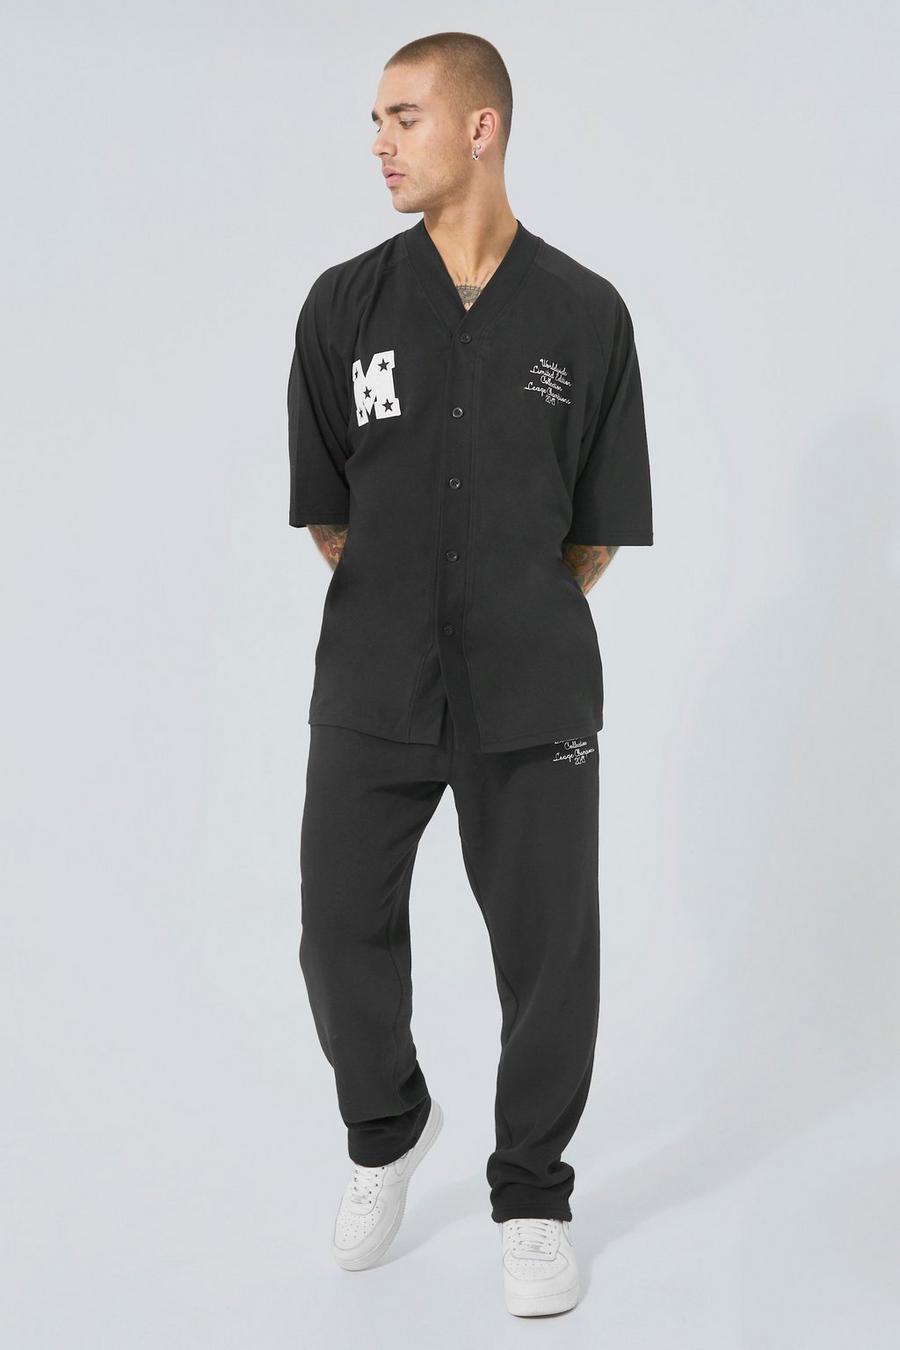 Black svart T-shirt och mjukisbyxor med baseballmotiv